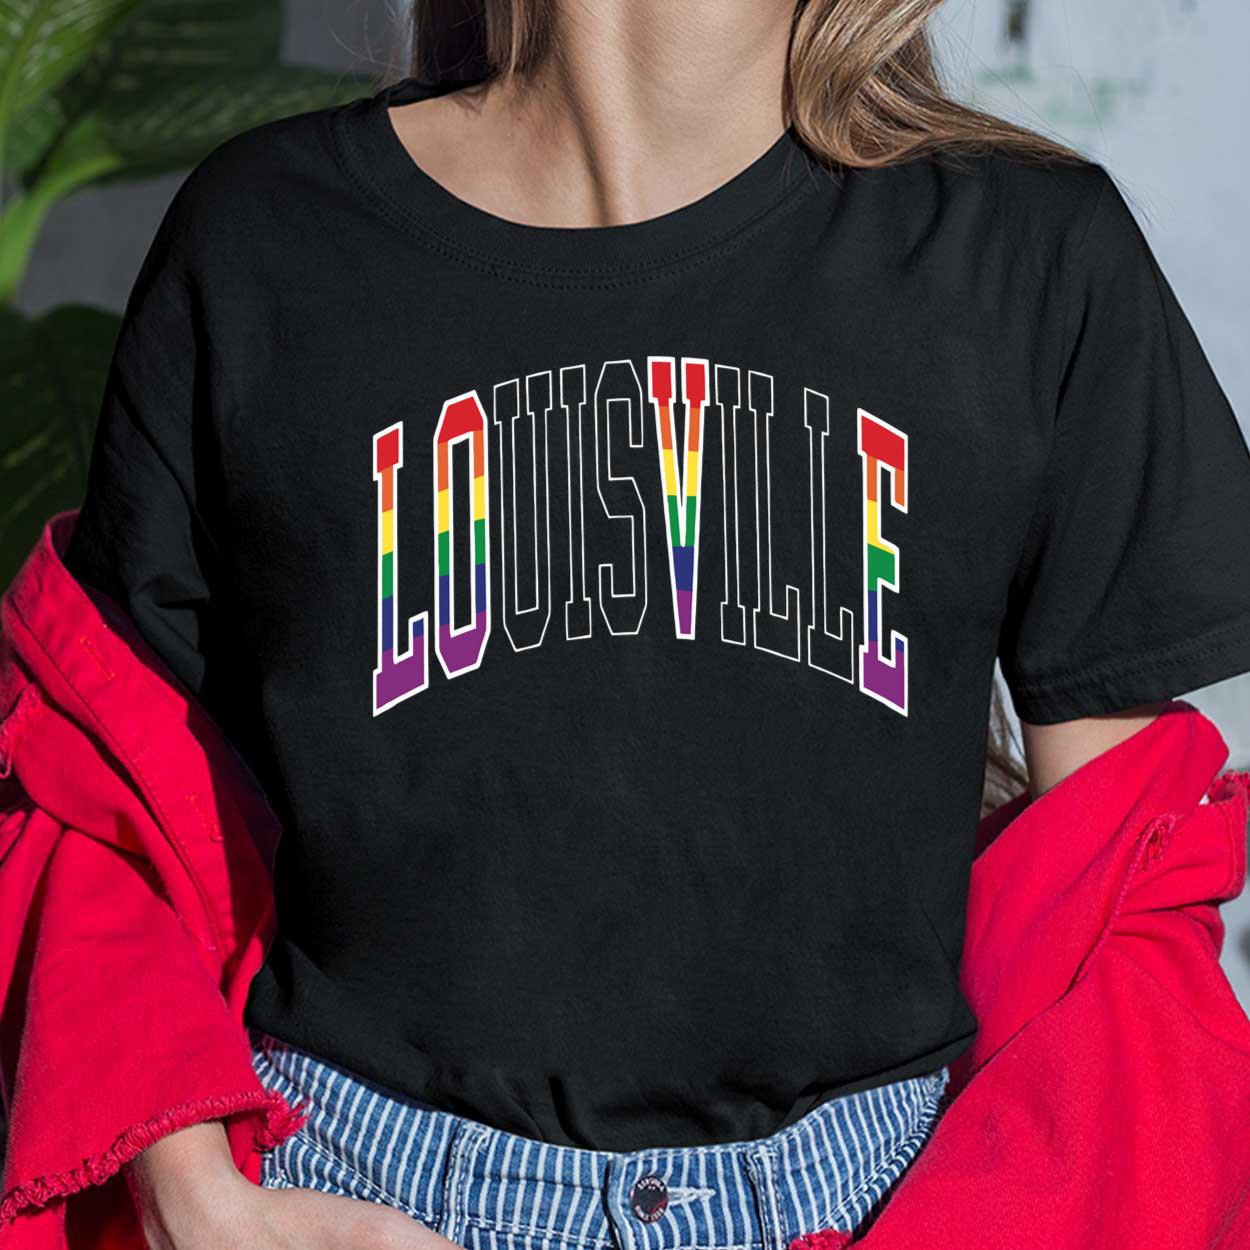 louisville sweatshirt women